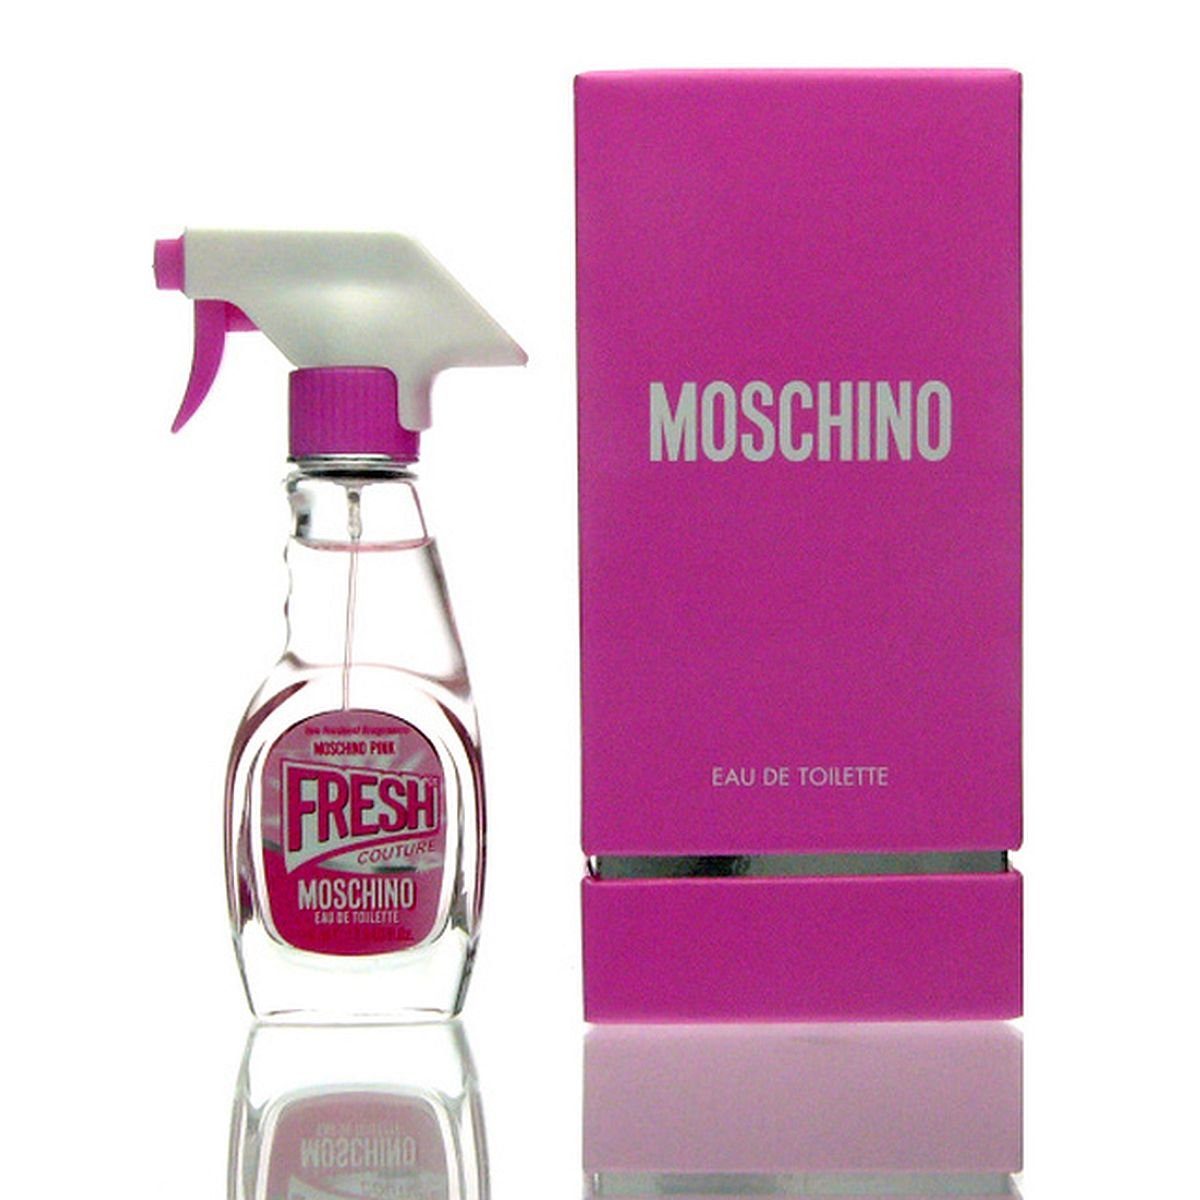 Toilette de Fresh Eau Moschino 100 Toilette Couture Pink de ml Moschino Eau